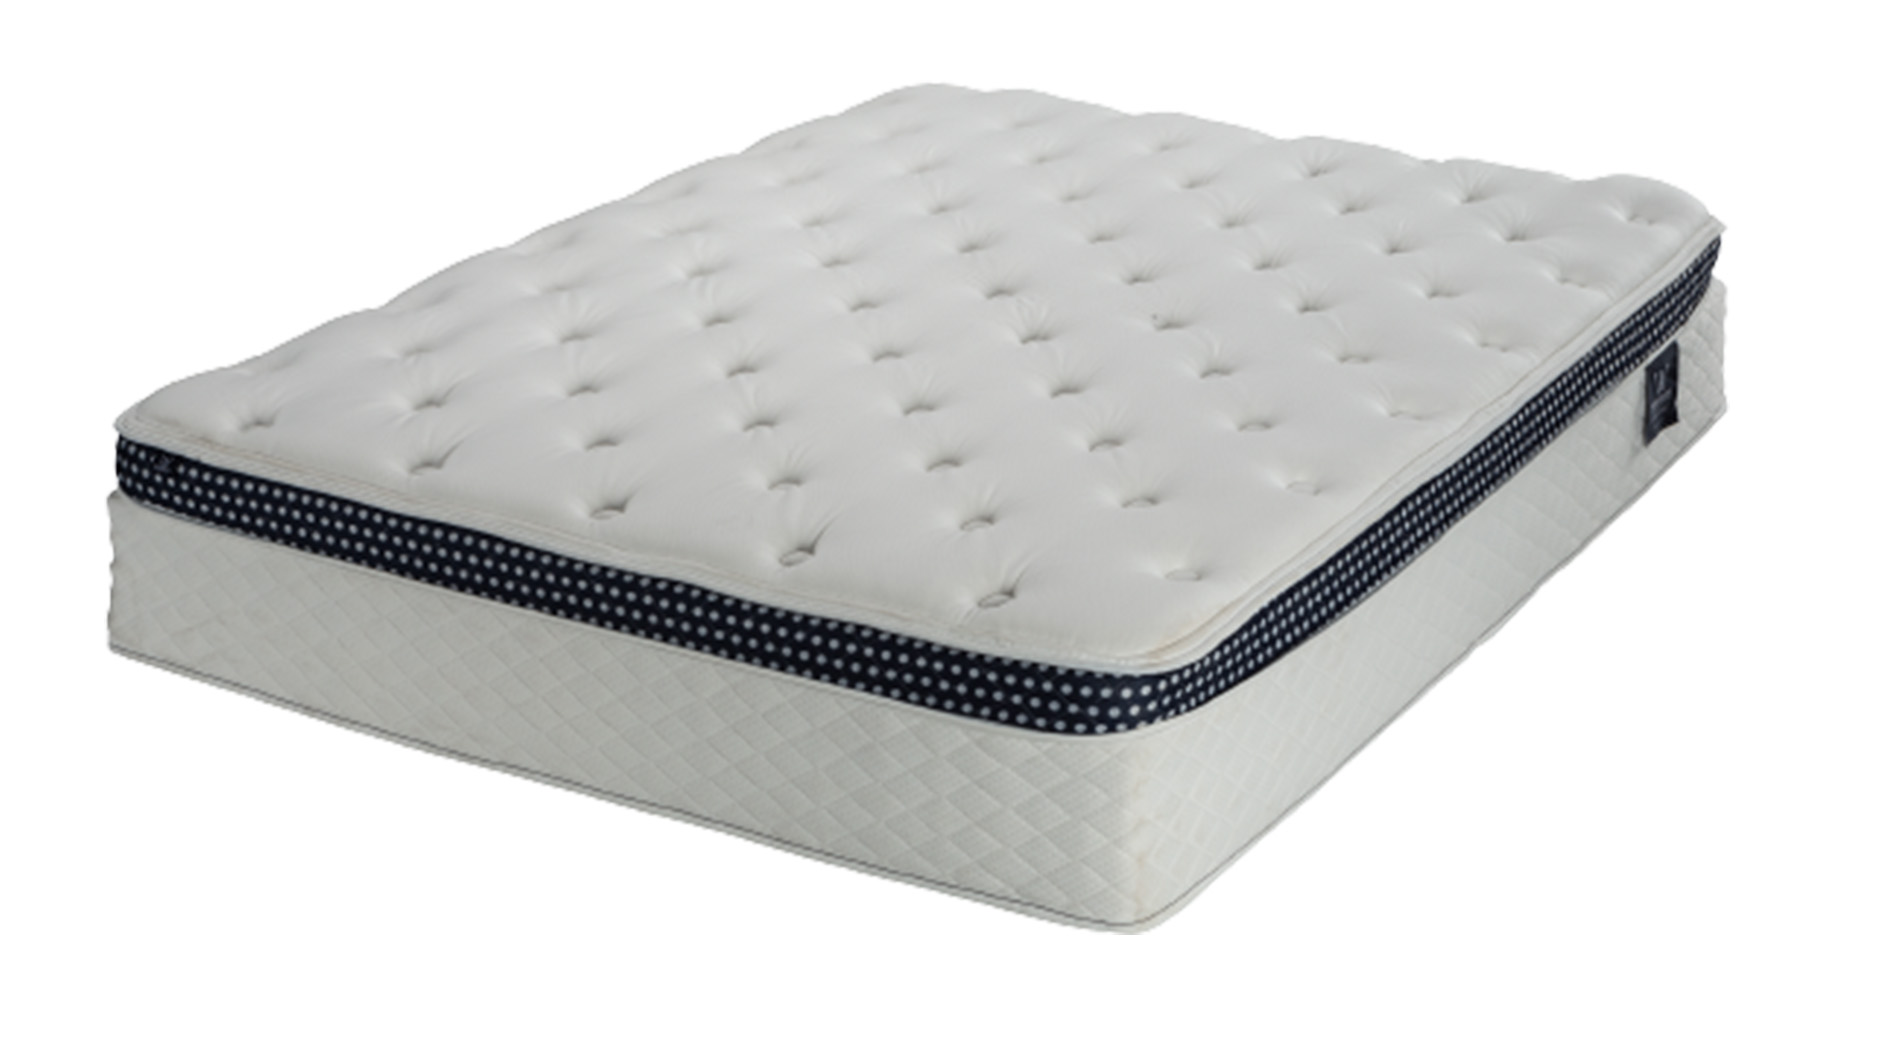 Best mattress: The WinkBed mattress shown with a Euro-pillow top